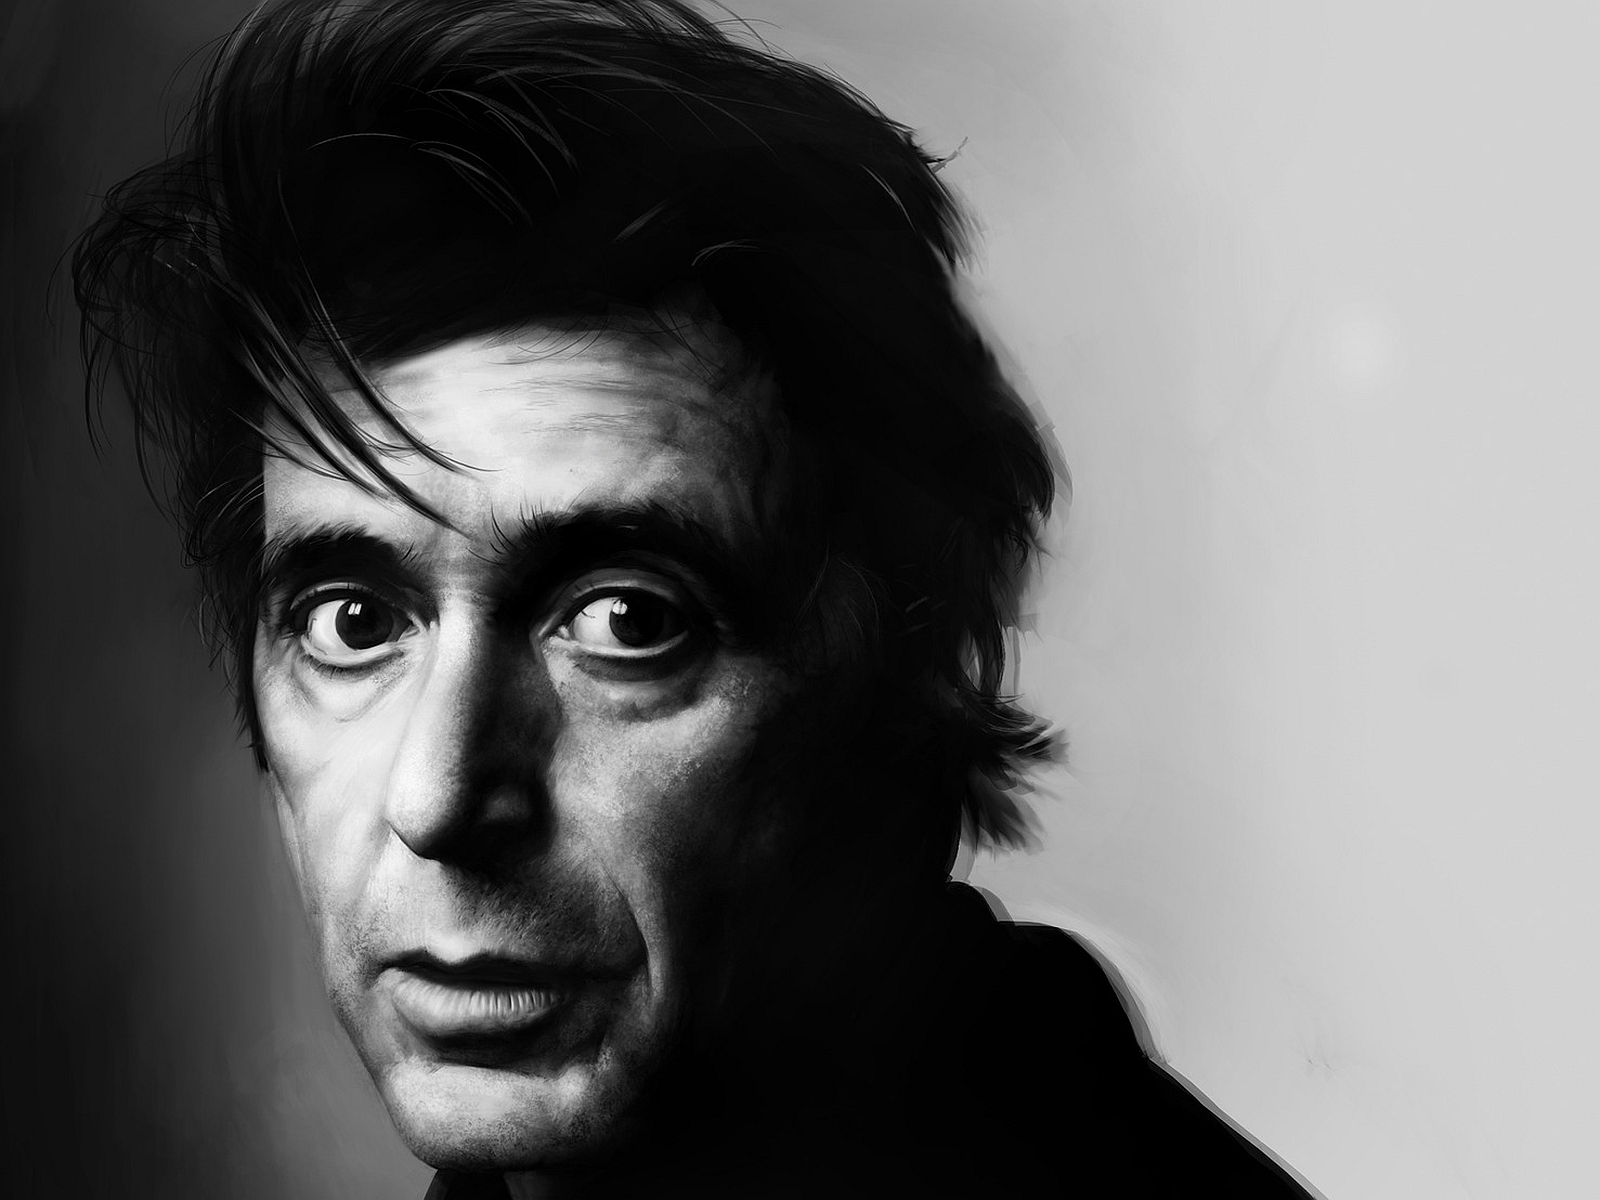 Lire la suite à propos de l’article Portrait d’Al Pacino : L’acteur Al dente.